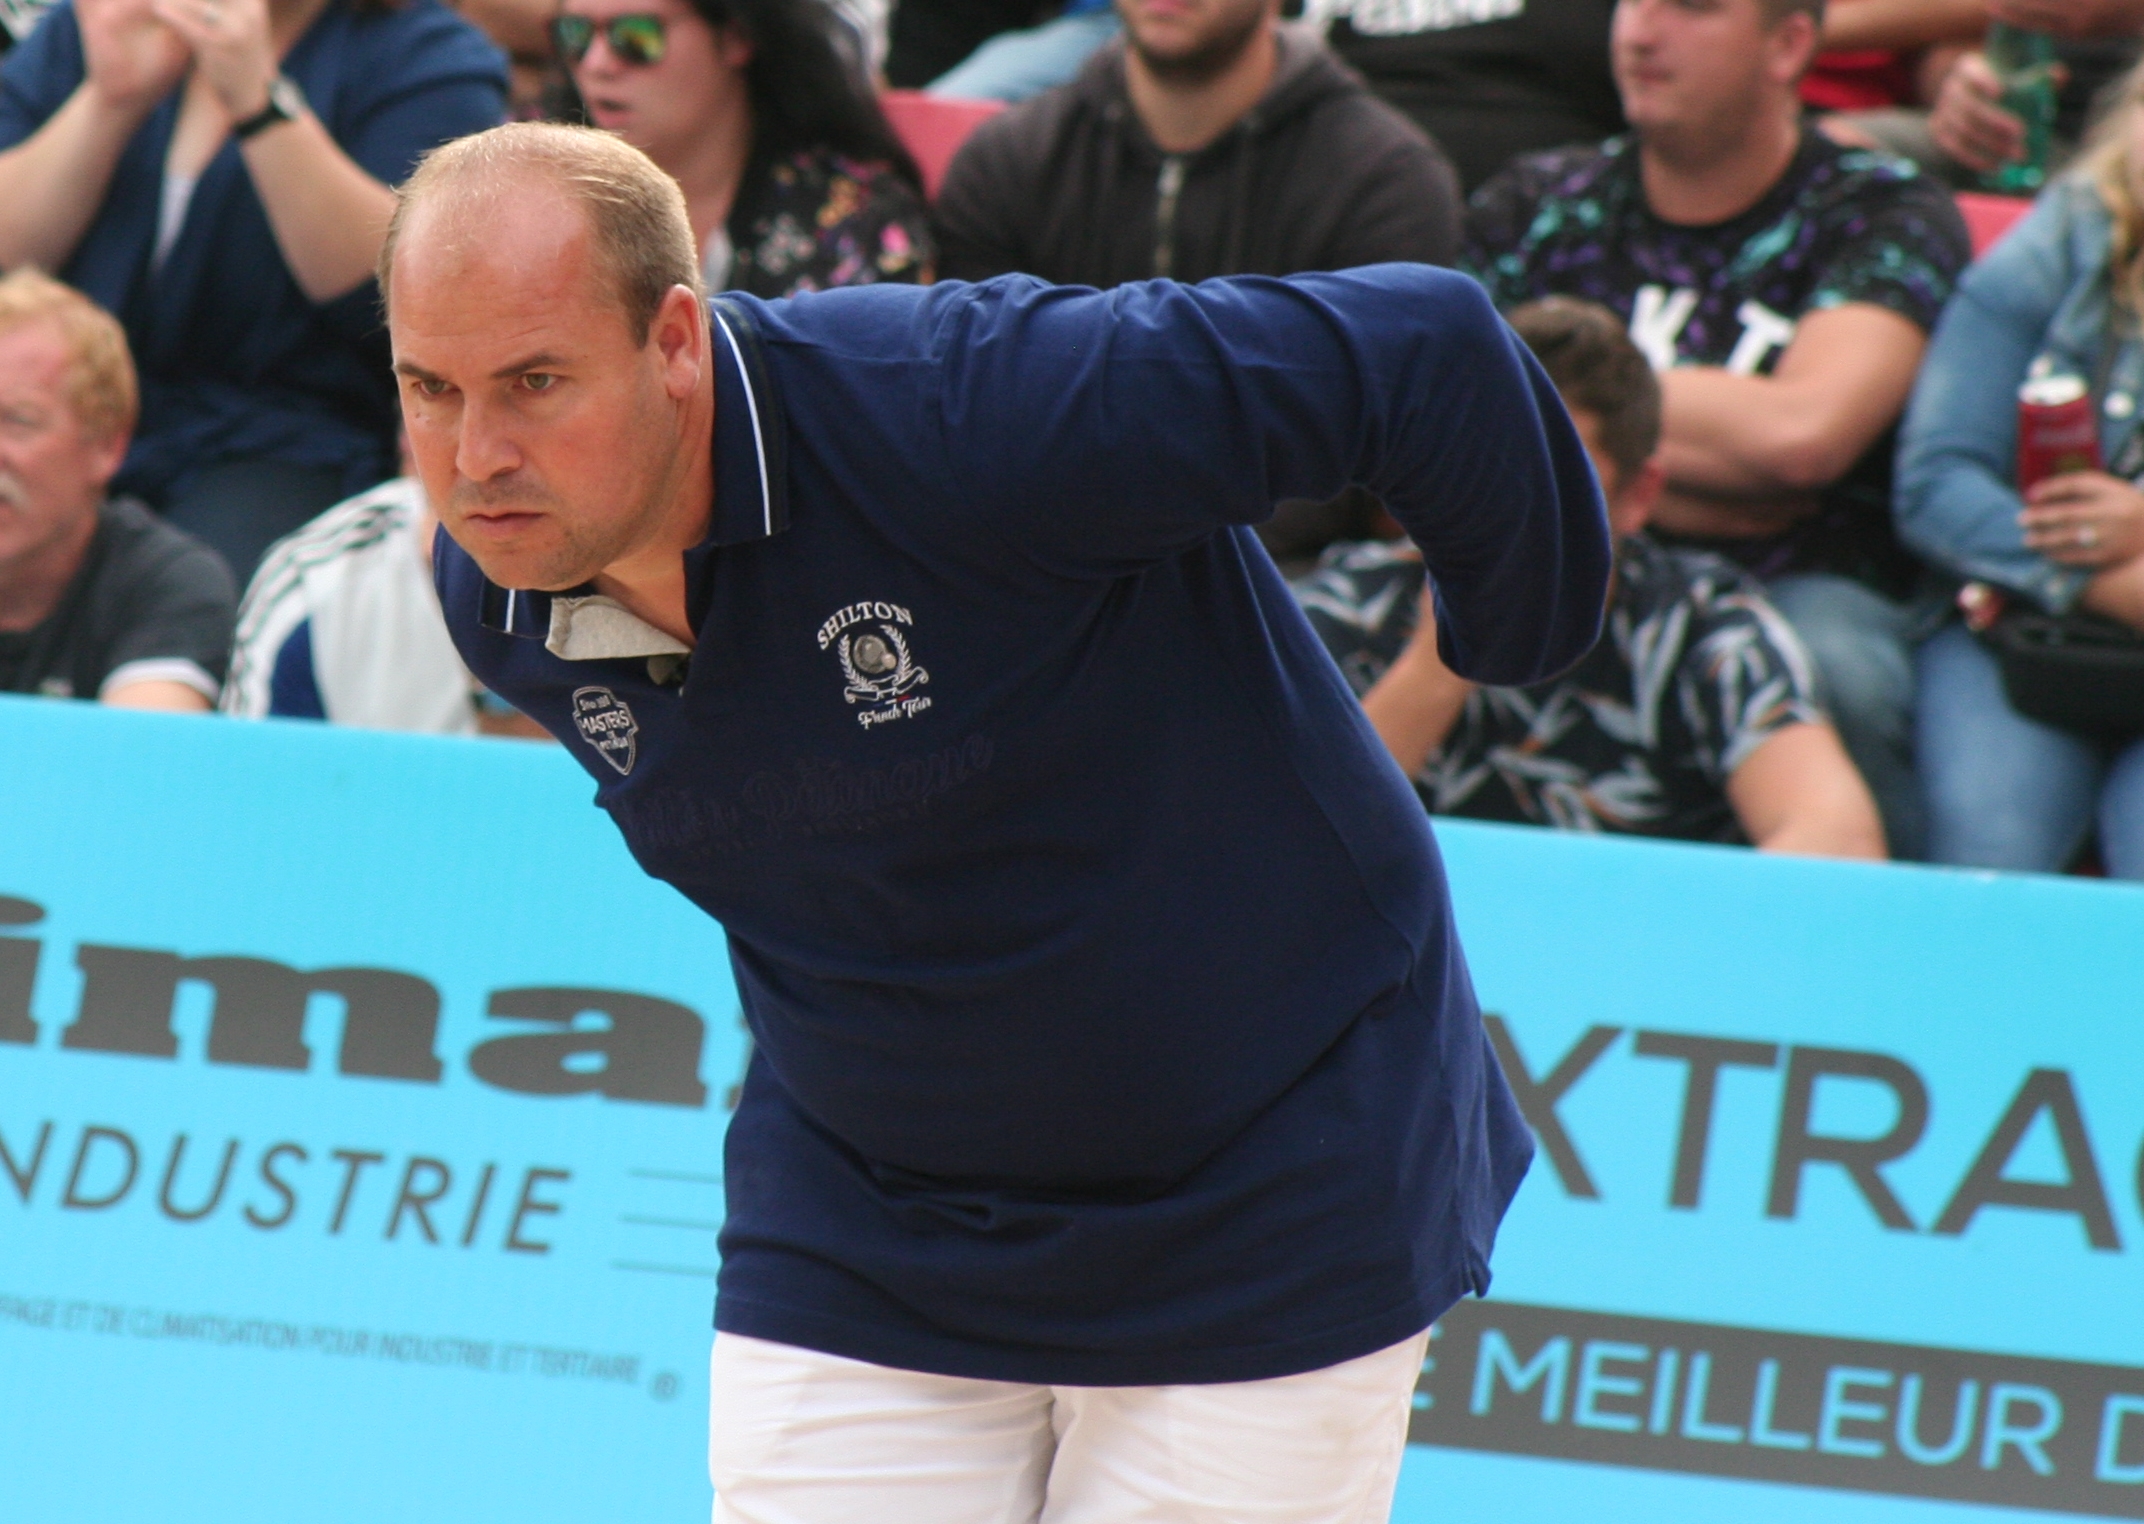 Le Cosnois Stéphane Robineau a remporté l'édition 2019 des Masters de pétanque. Au sein d'une "dream team" réunissant Dylan Rocher, Philippe Quintais et Philippe Suchaud, il peut envisager de renouveler cette performance début septembre, lors du Final Four.